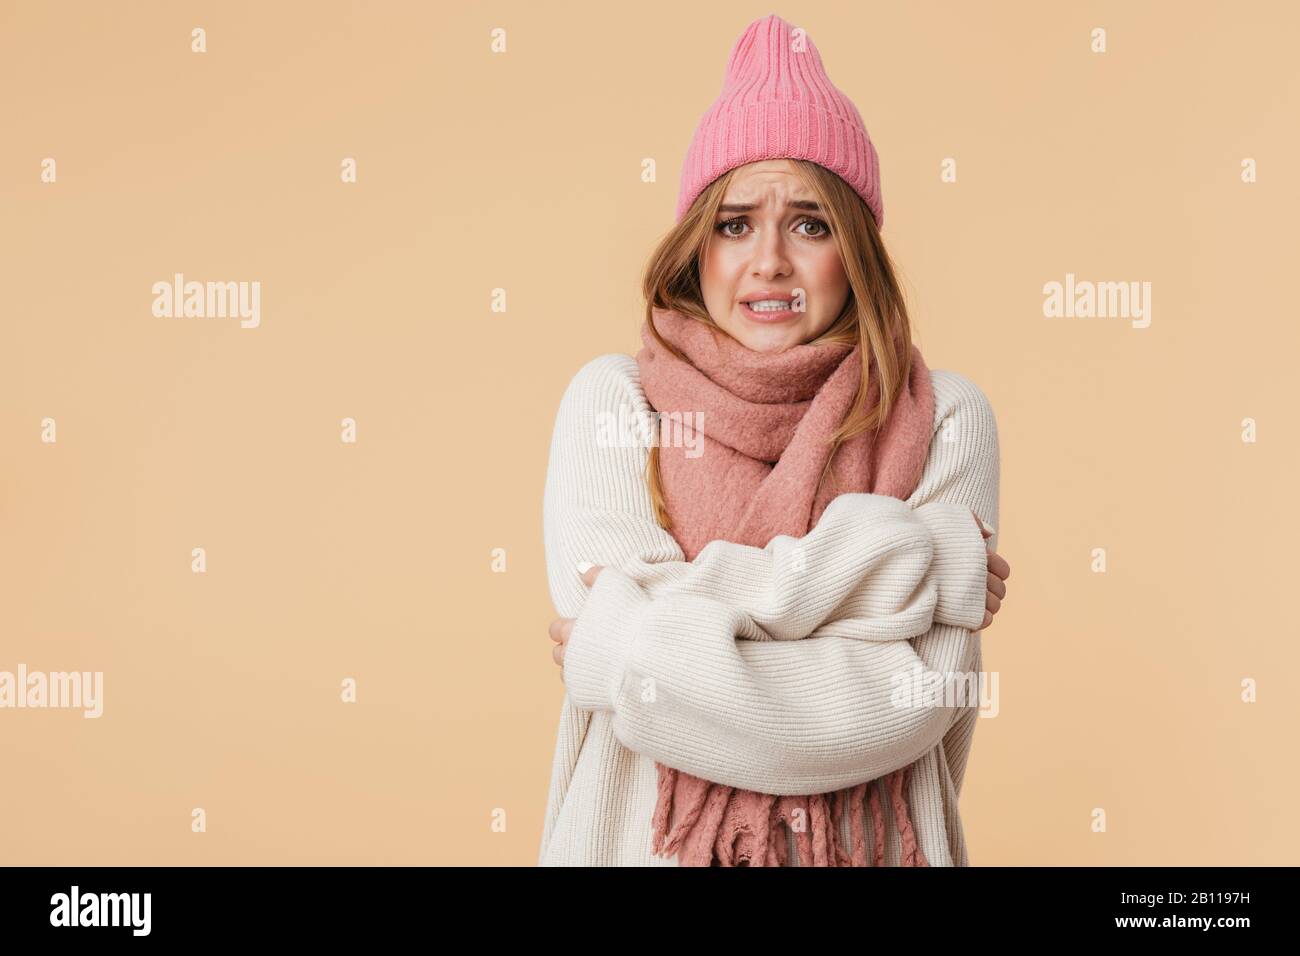 Immagine della giovane ragazza caucasica che indossa cappello invernale e sciarpa tremante e sensazione di freddo isolato su sfondo beige Foto Stock